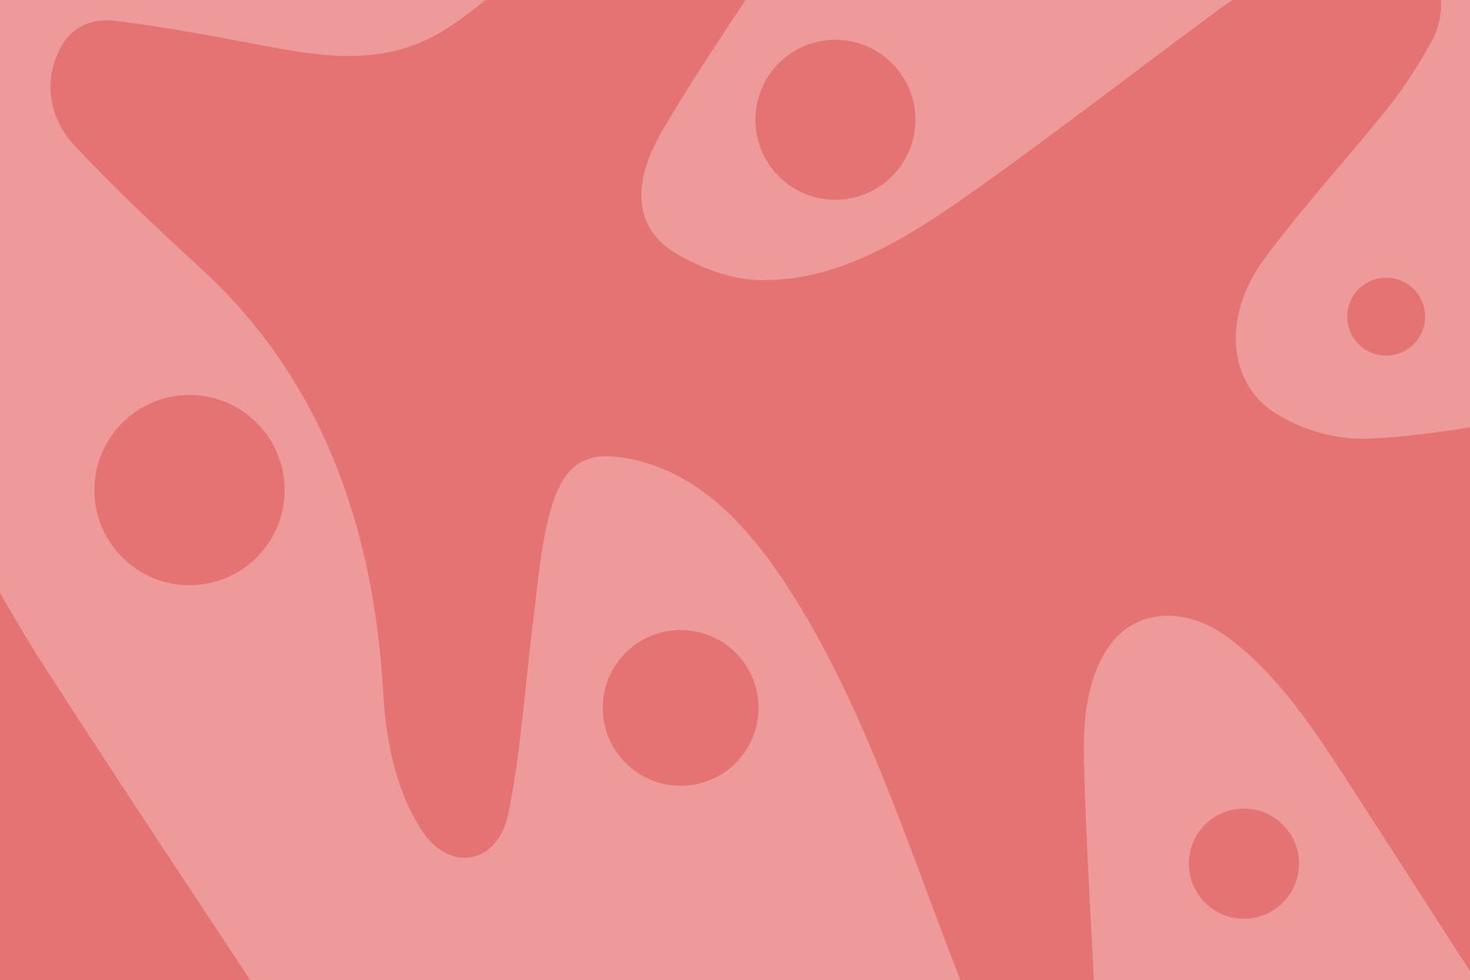 abstrakt bakgrund med flödesformer i två färger för bannersektioner artiklar presentationer trendigt designelement vektor